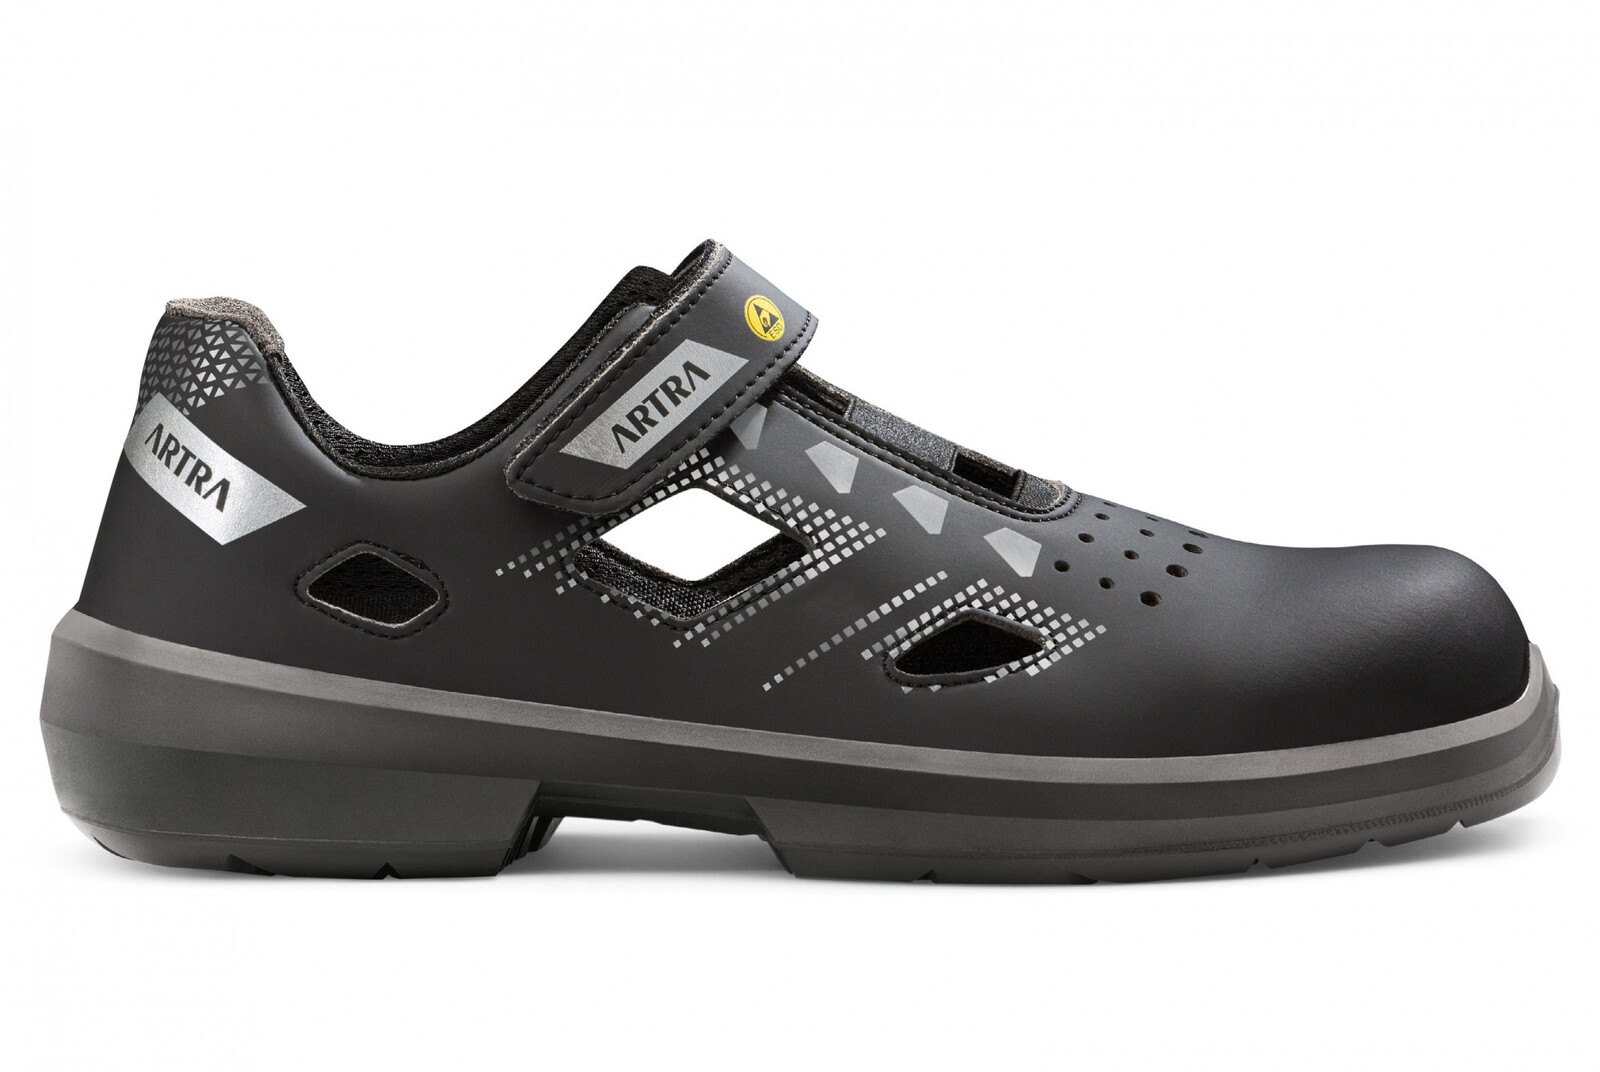 Bezpečnostné sandále Artra Arzo 805 676560 S1 SRC ESD MF - veľkosť: 43, farba: čierna/sivá